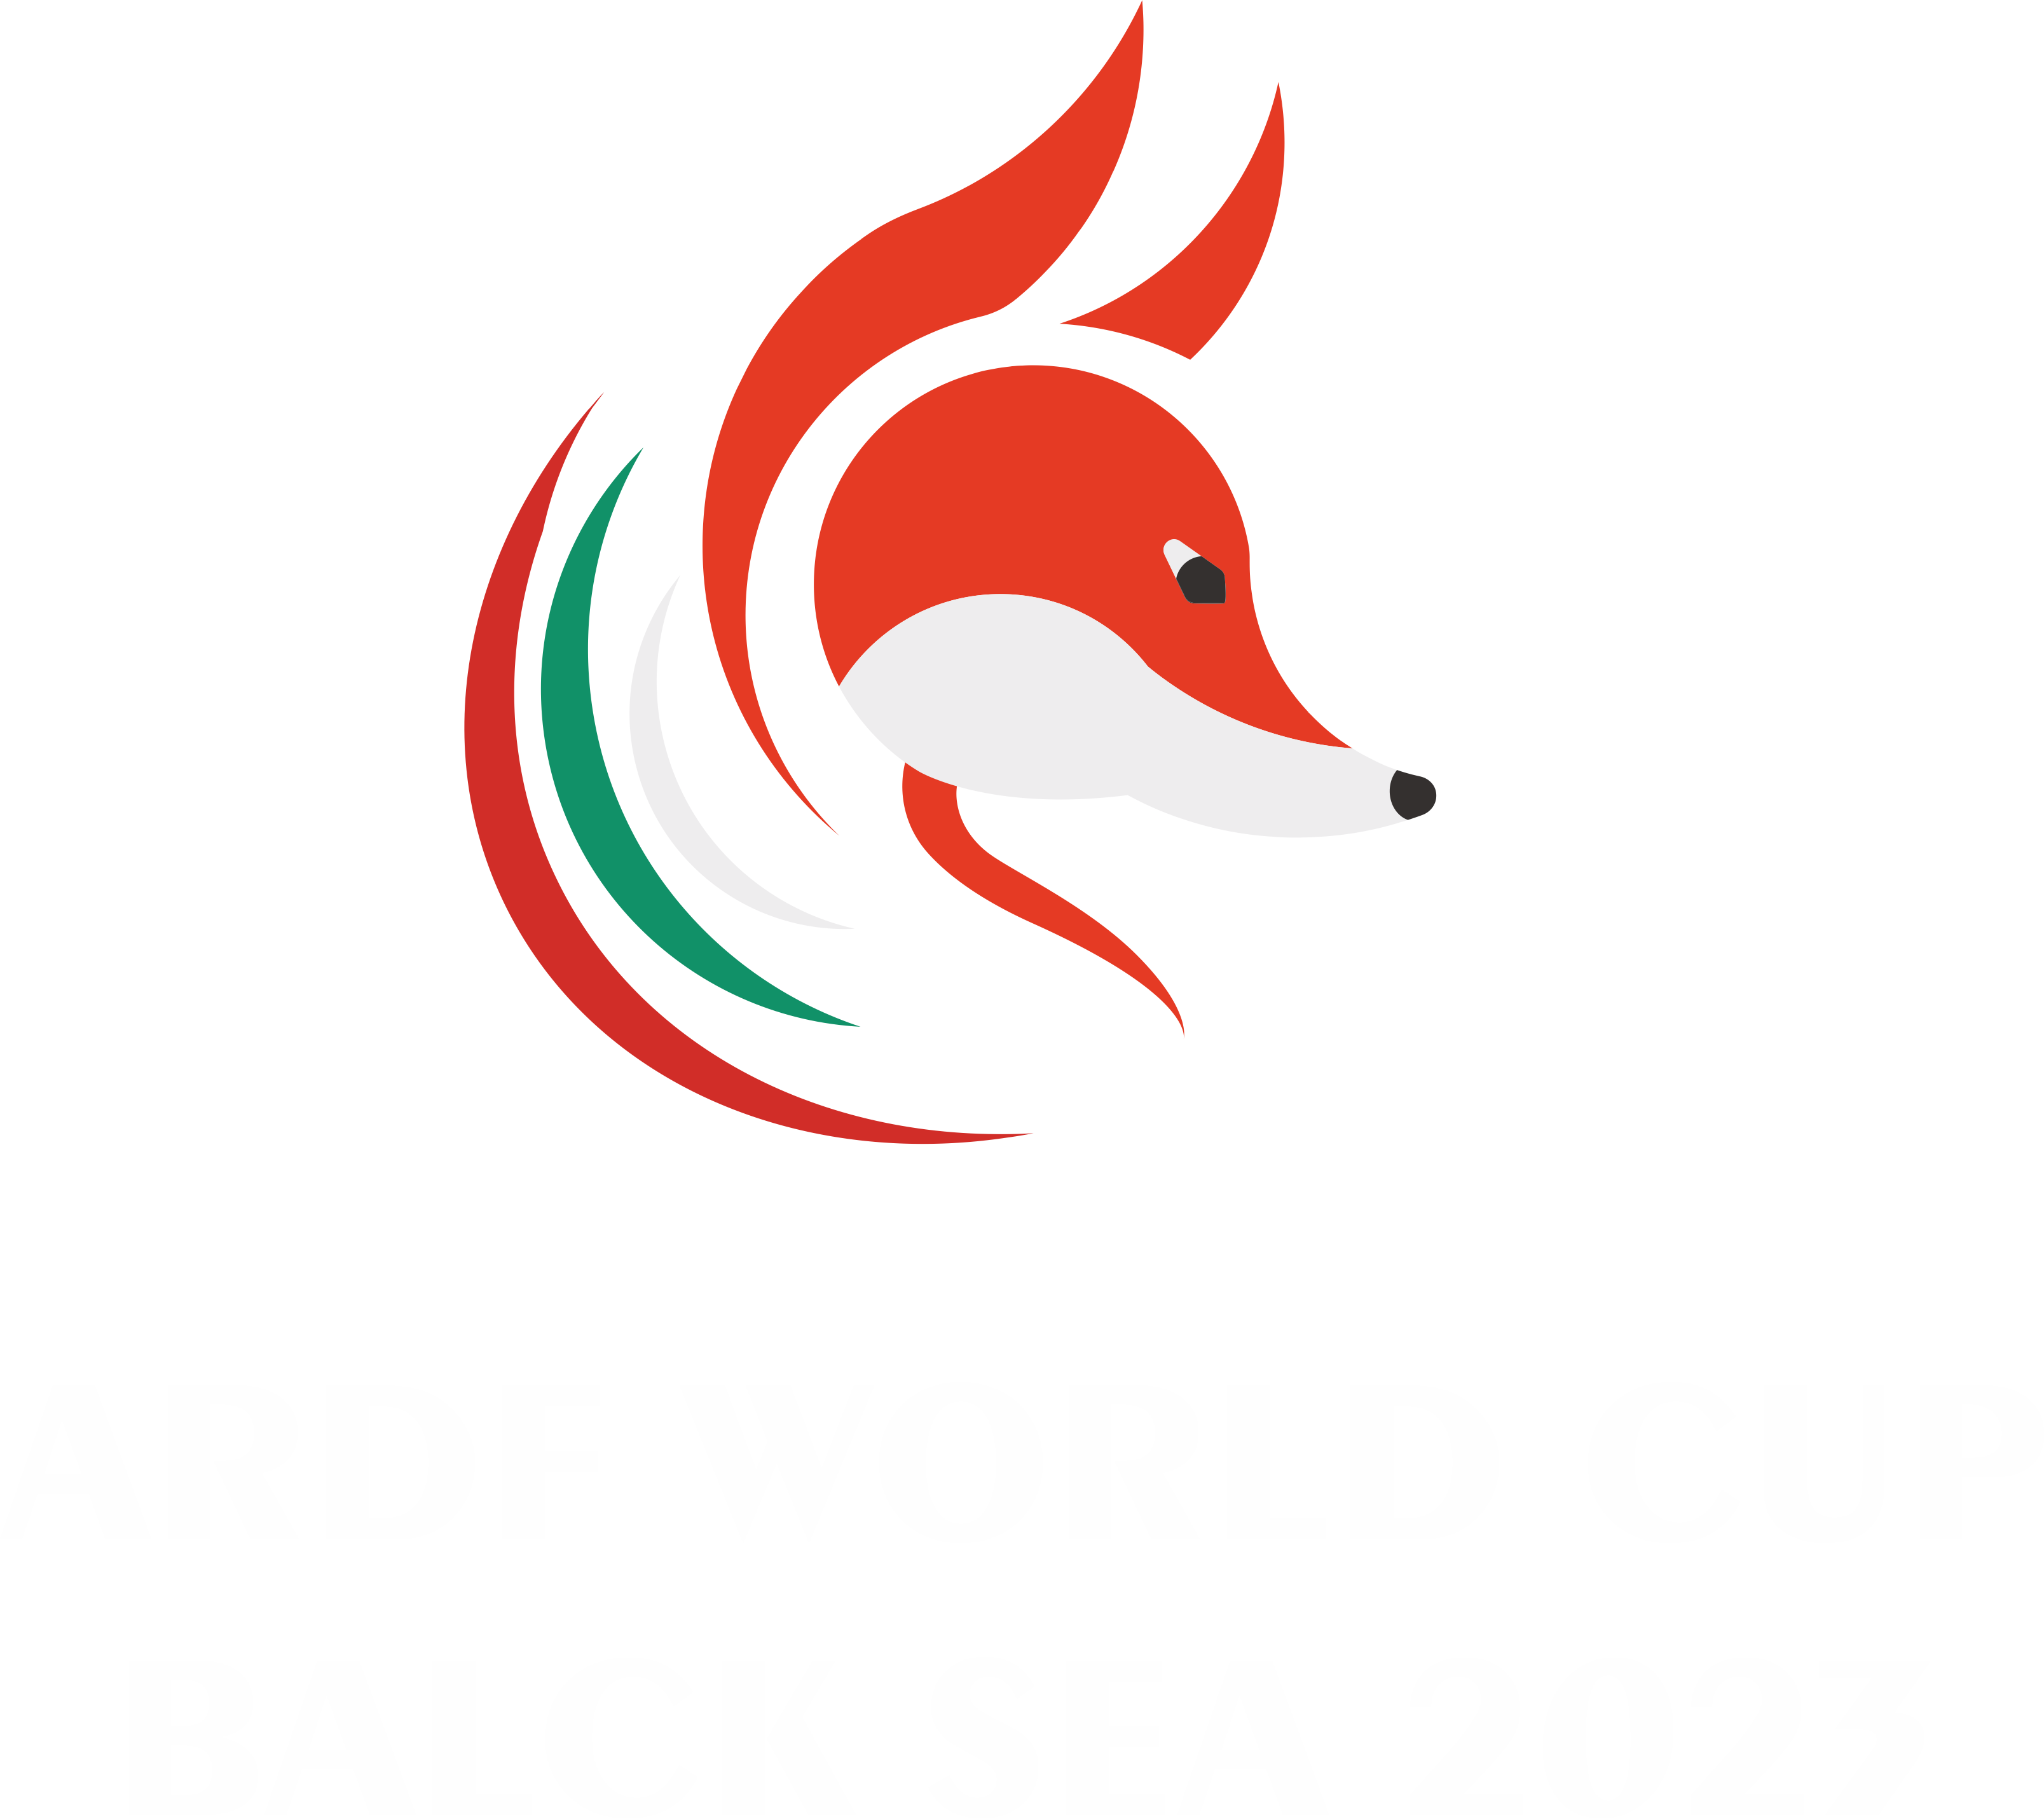 ARDF 2023